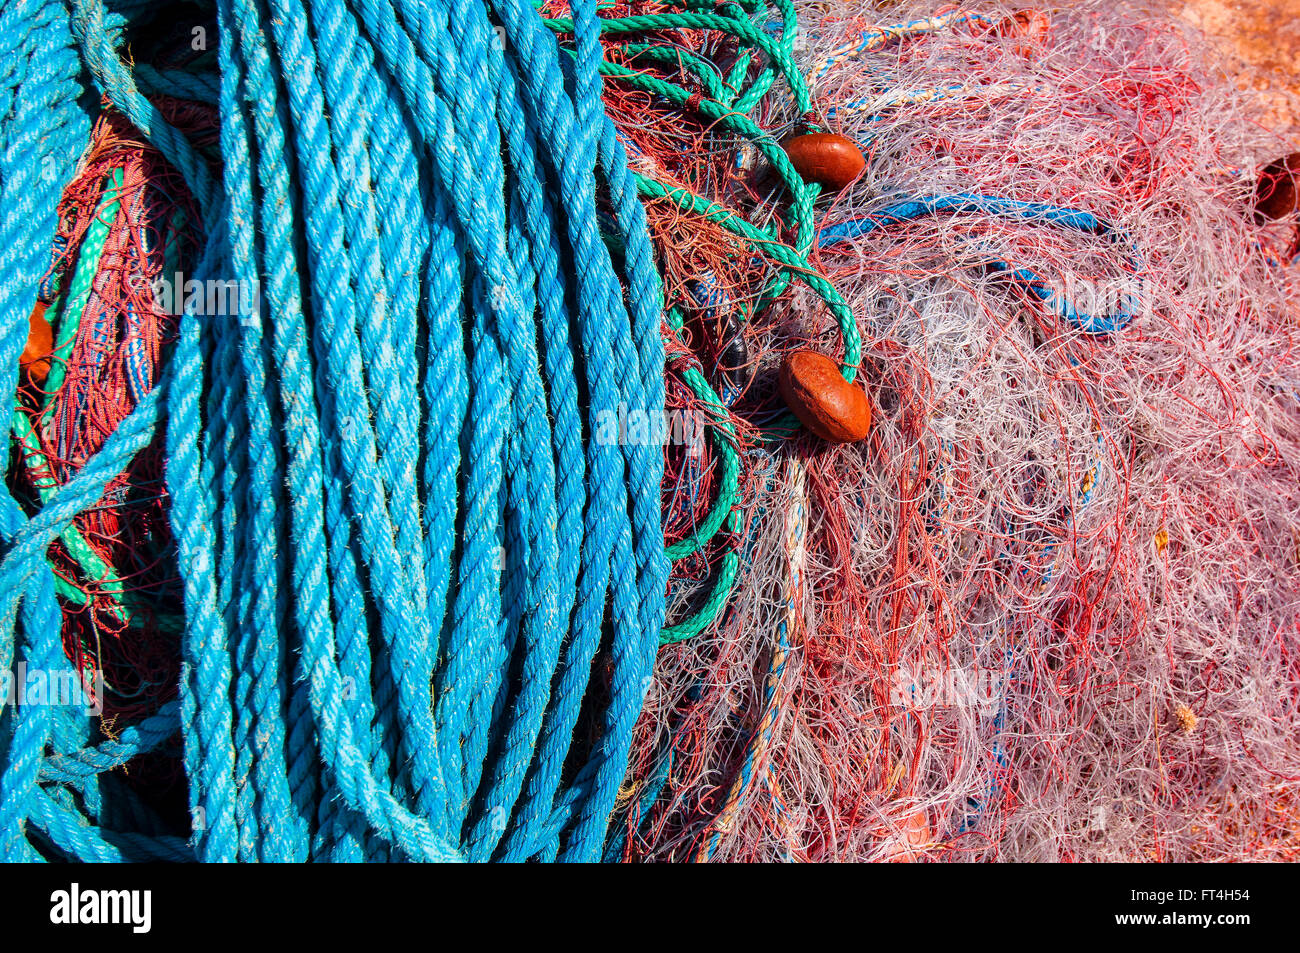 Cargése filet de pêche Corse France Stock Photo